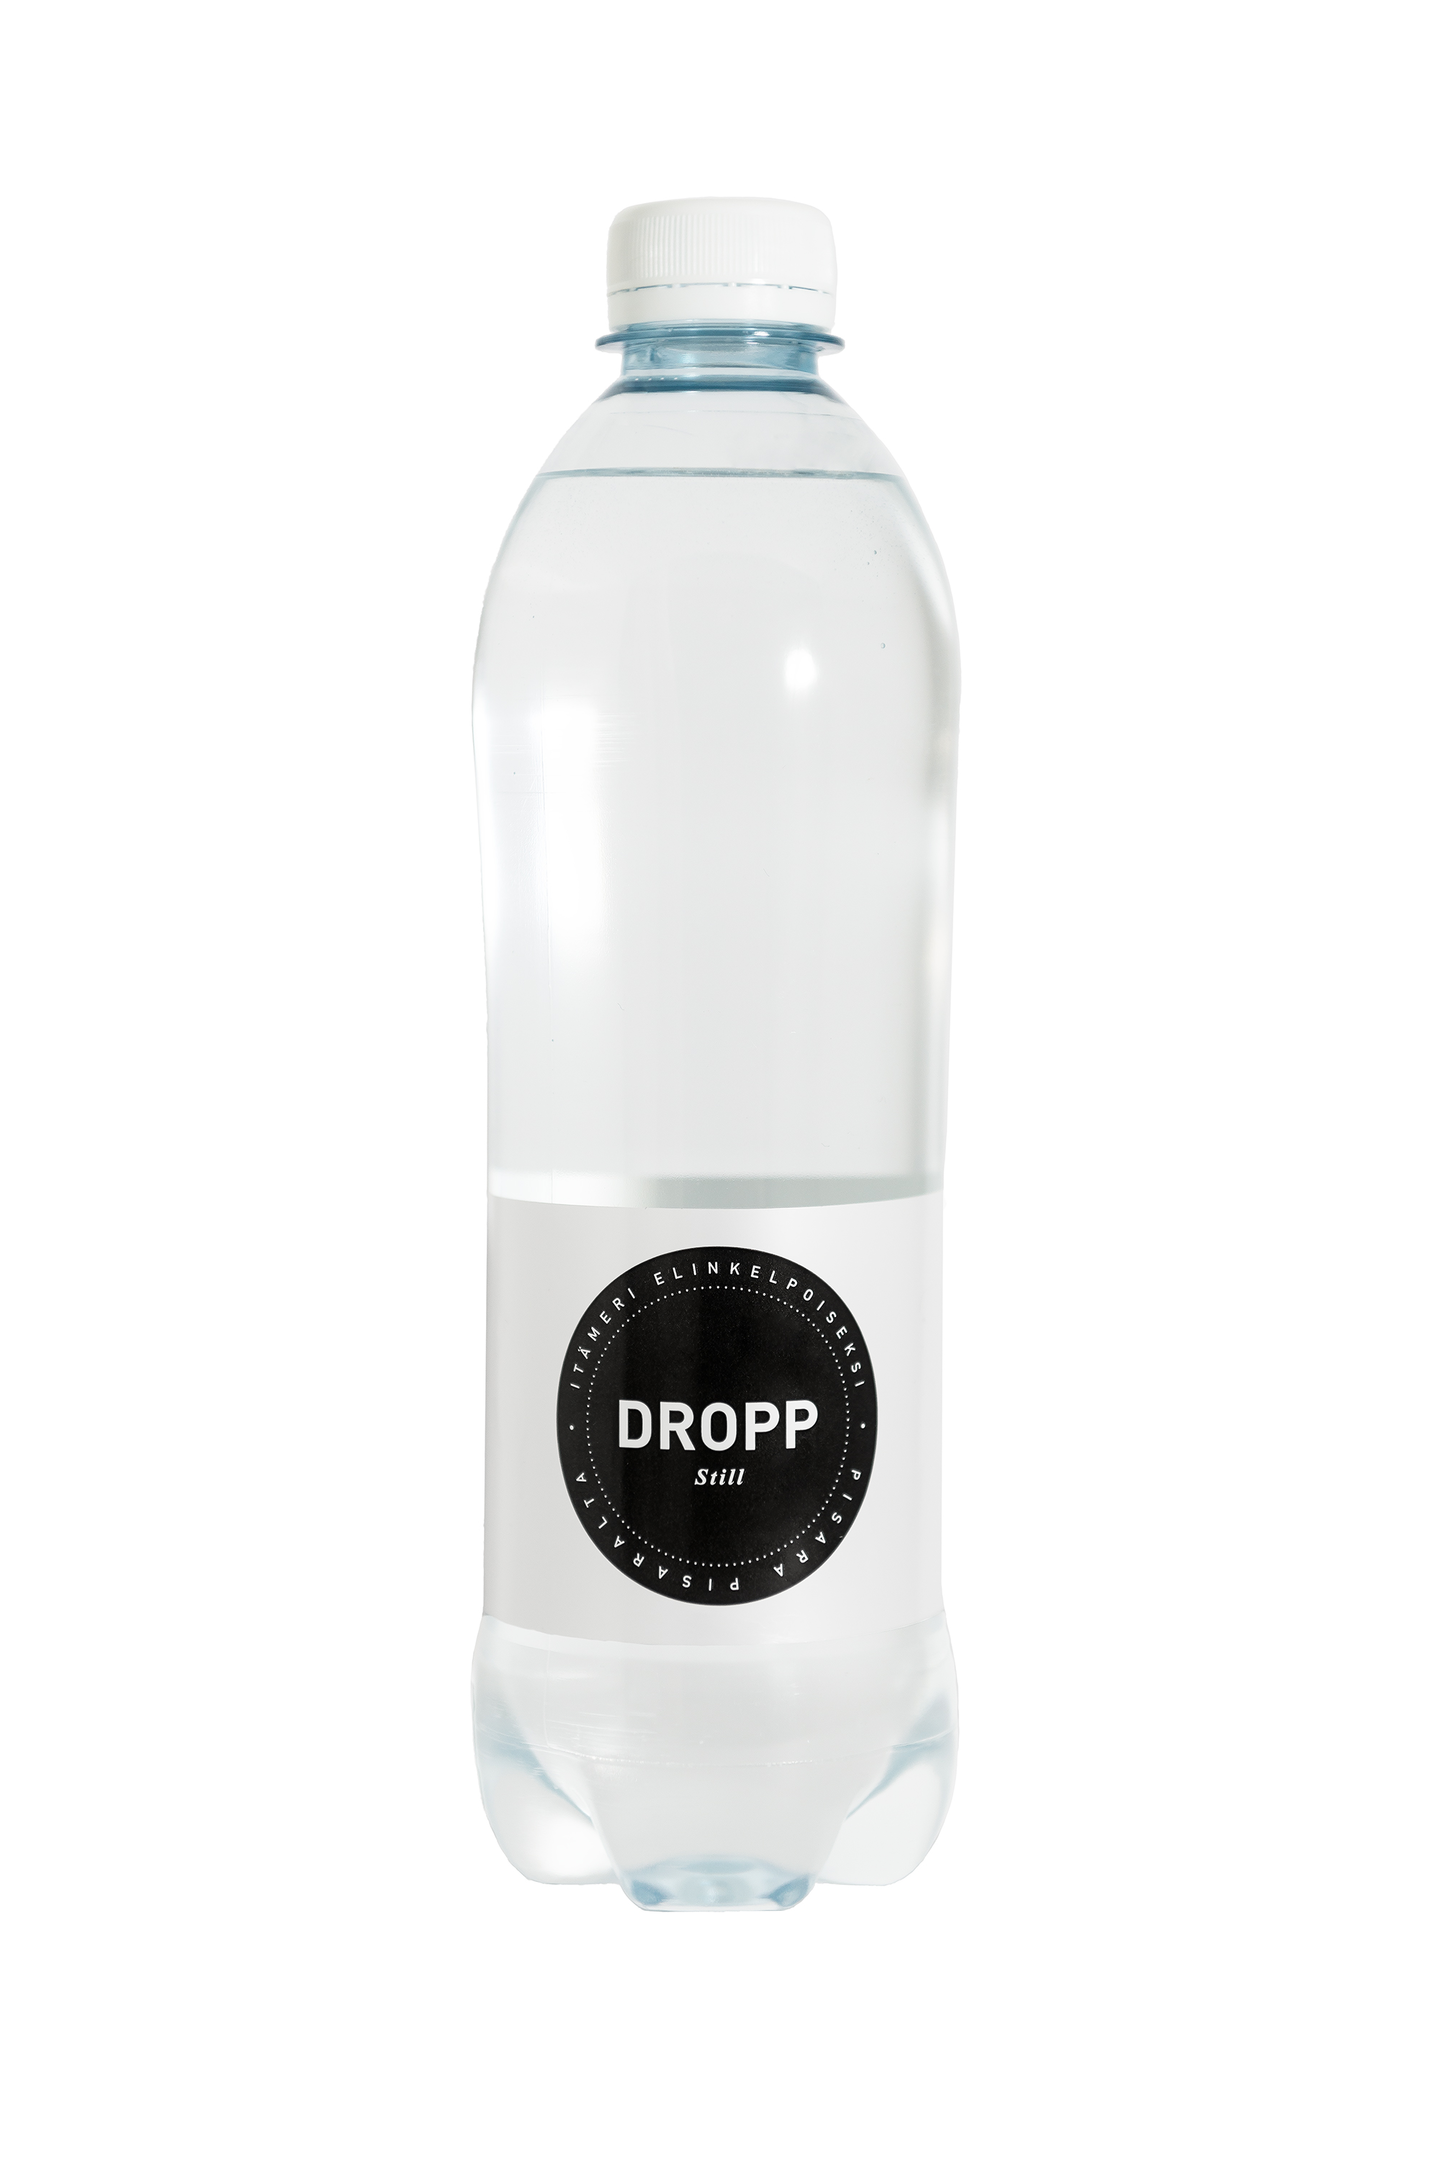 DROPP lähdevesi 0,5l